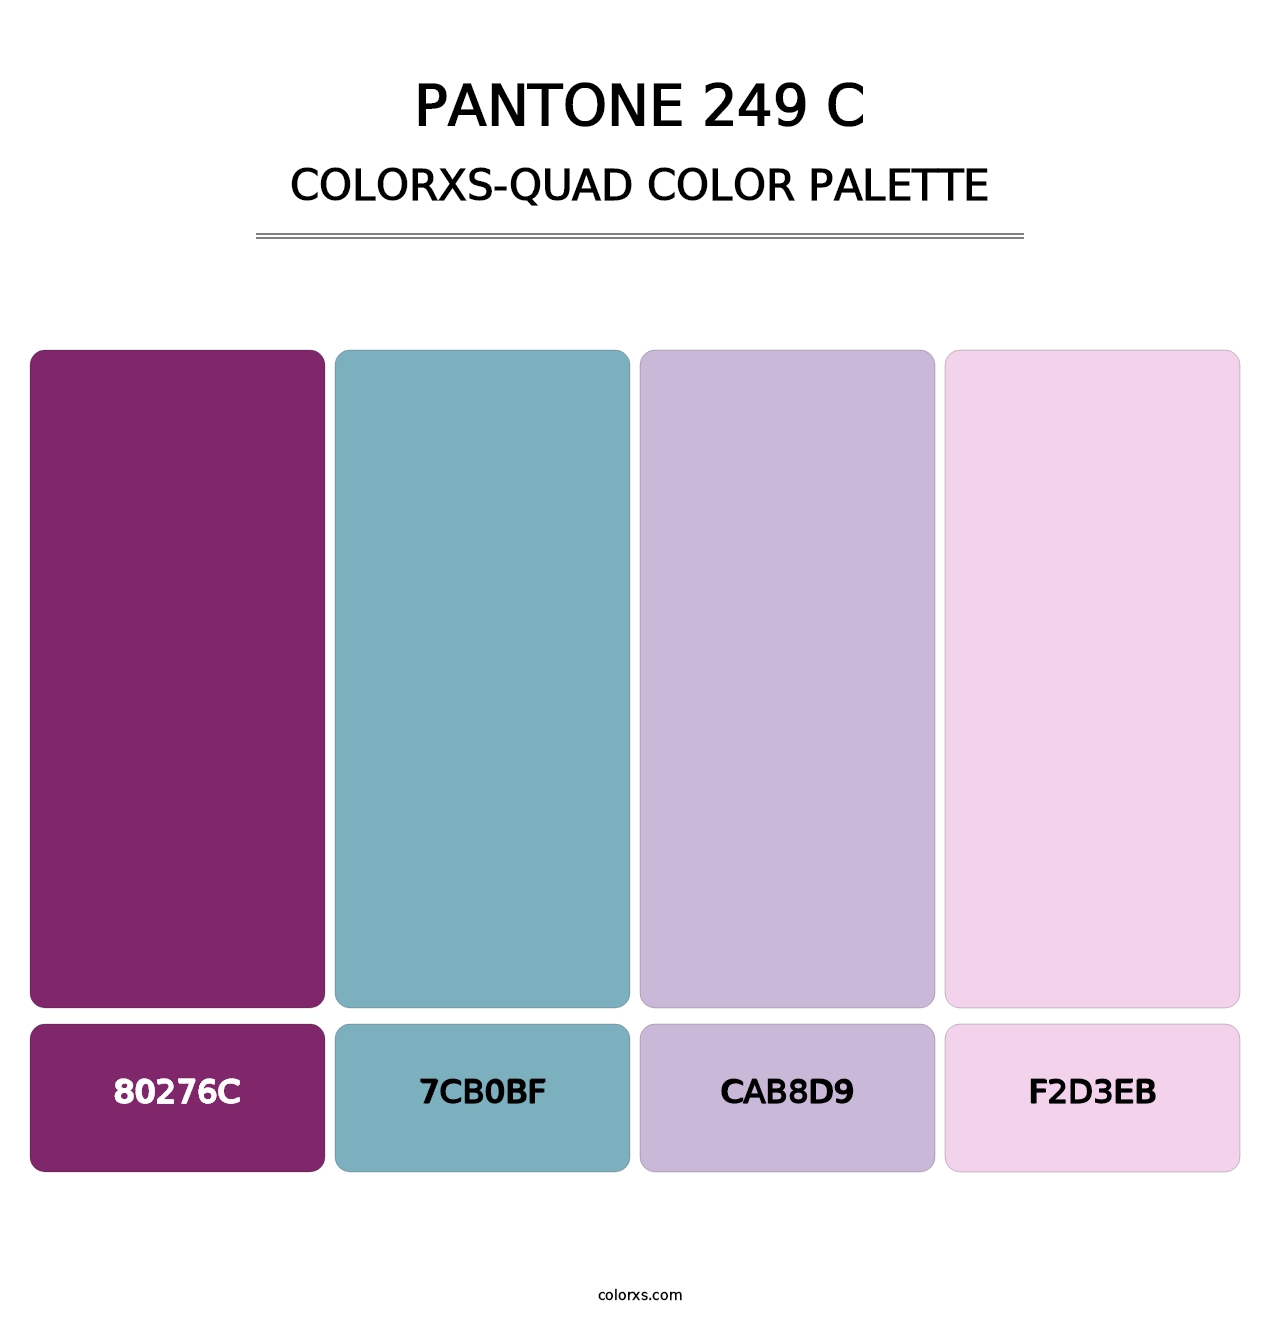 PANTONE 249 C - Colorxs Quad Palette